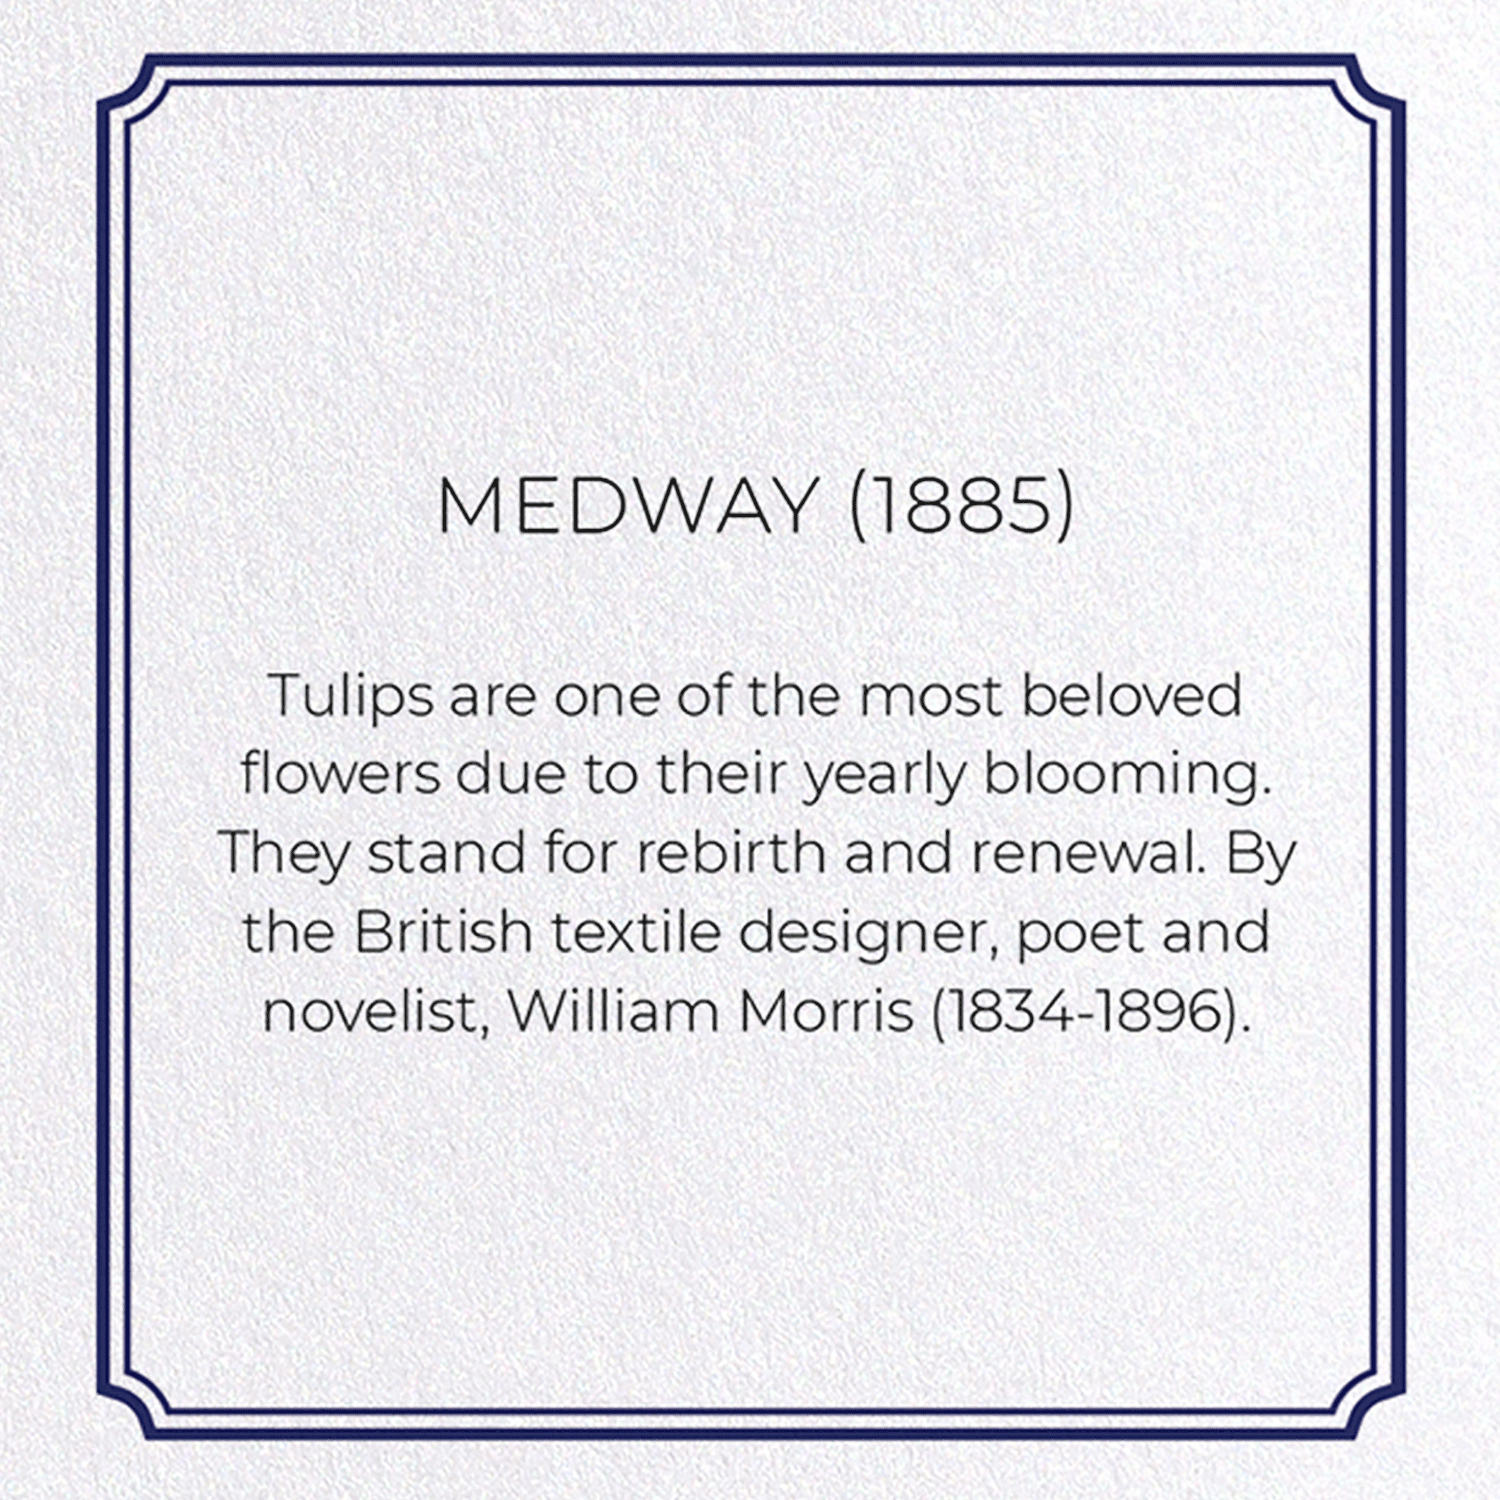 MEDWAY (1885)